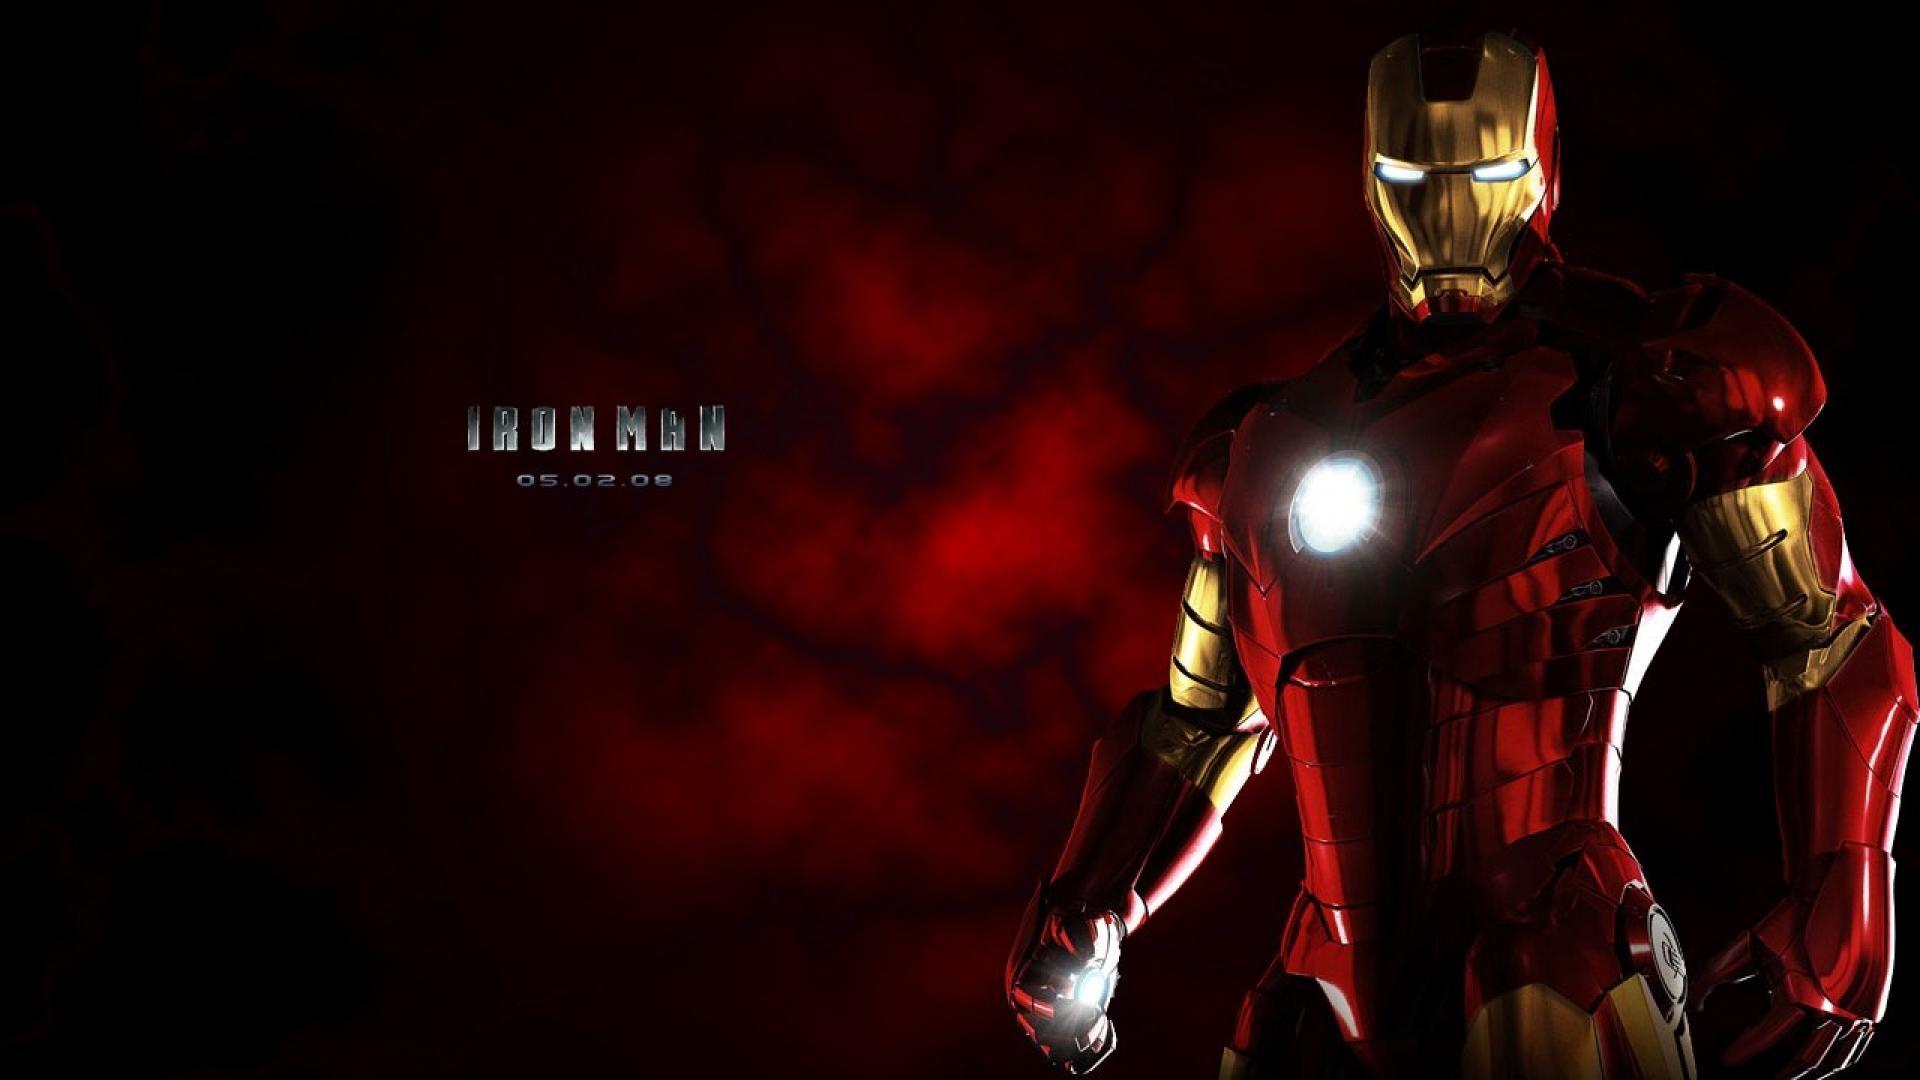 Iron Man HD Desktop Wallpaper For Widescreen. HD Wallpaper